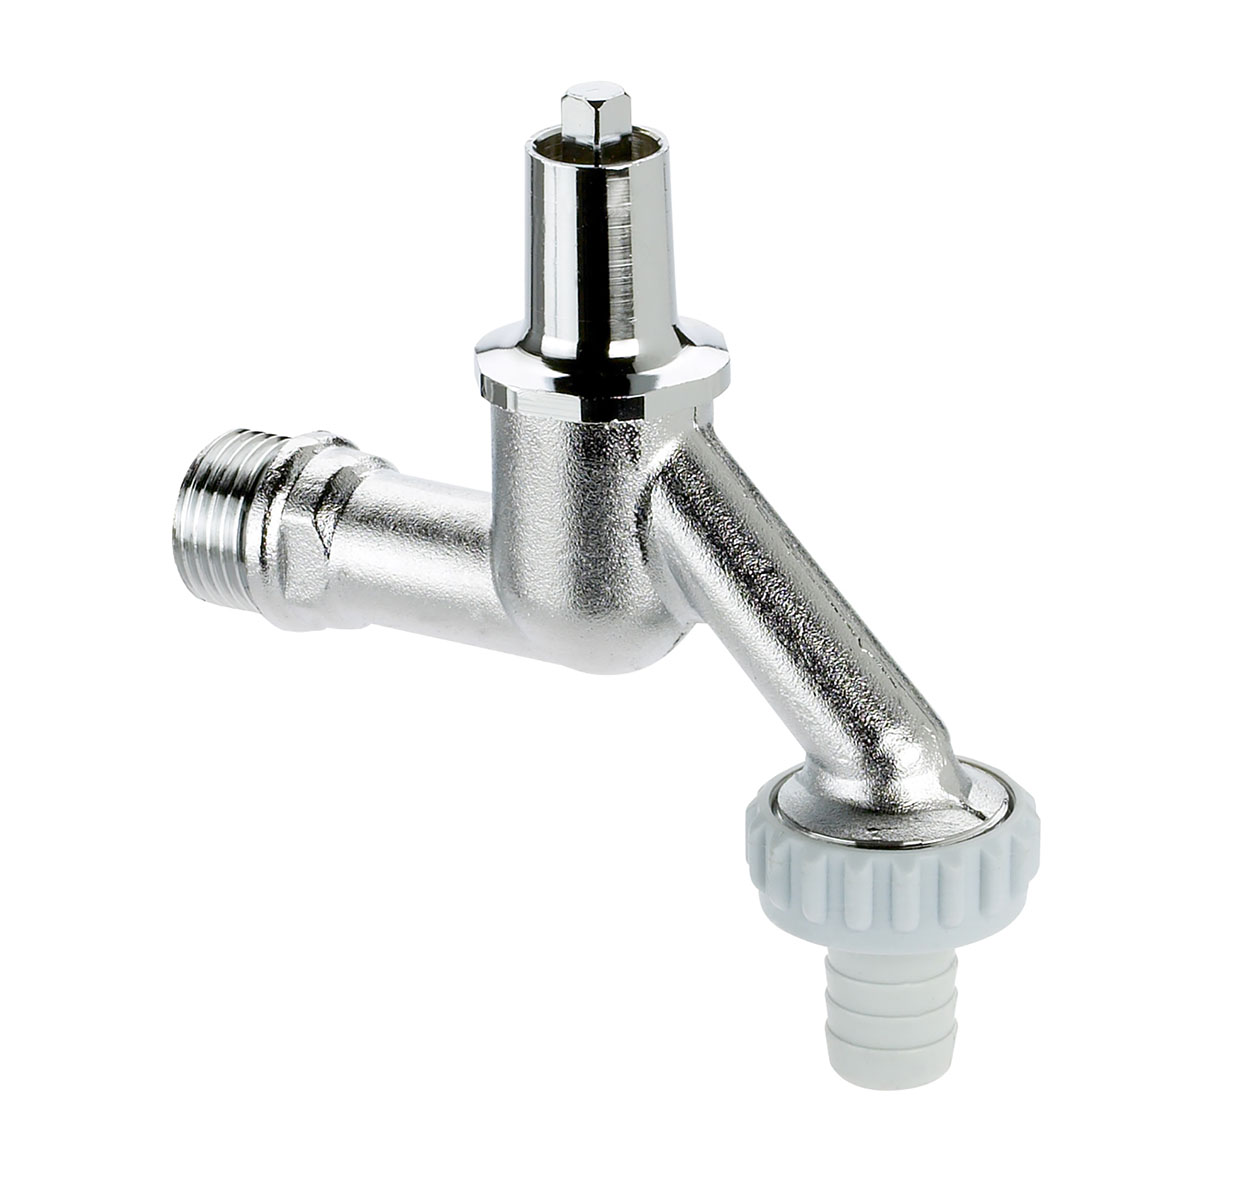 1015151 - Brass draw-off tap - light variation socket key upper-part